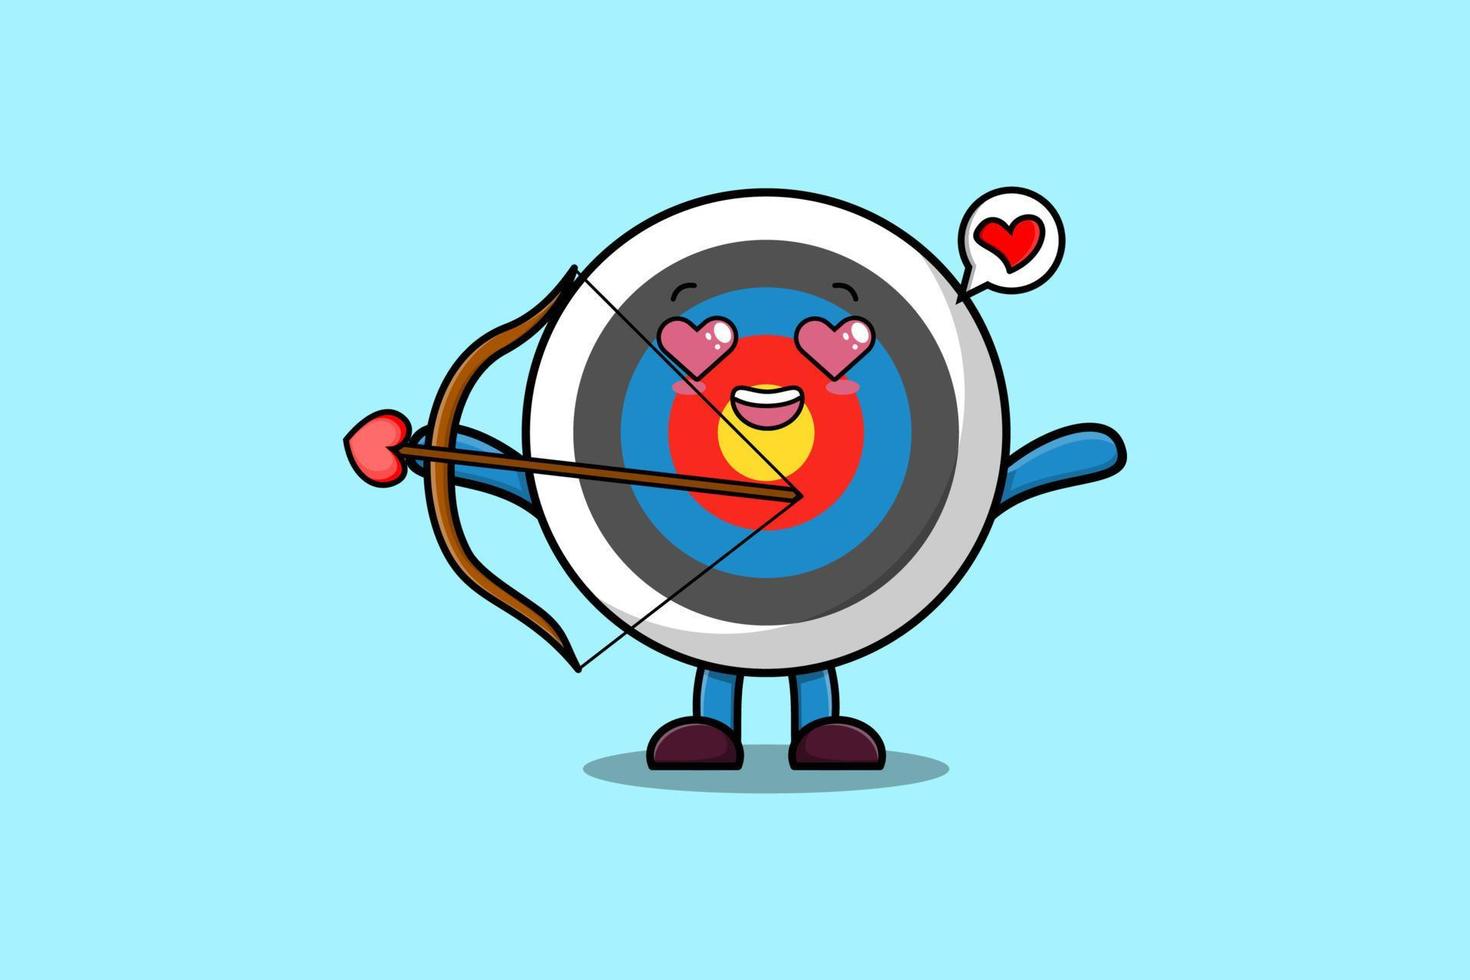 Cute cartoon mascot romantic cupid Archery target vector